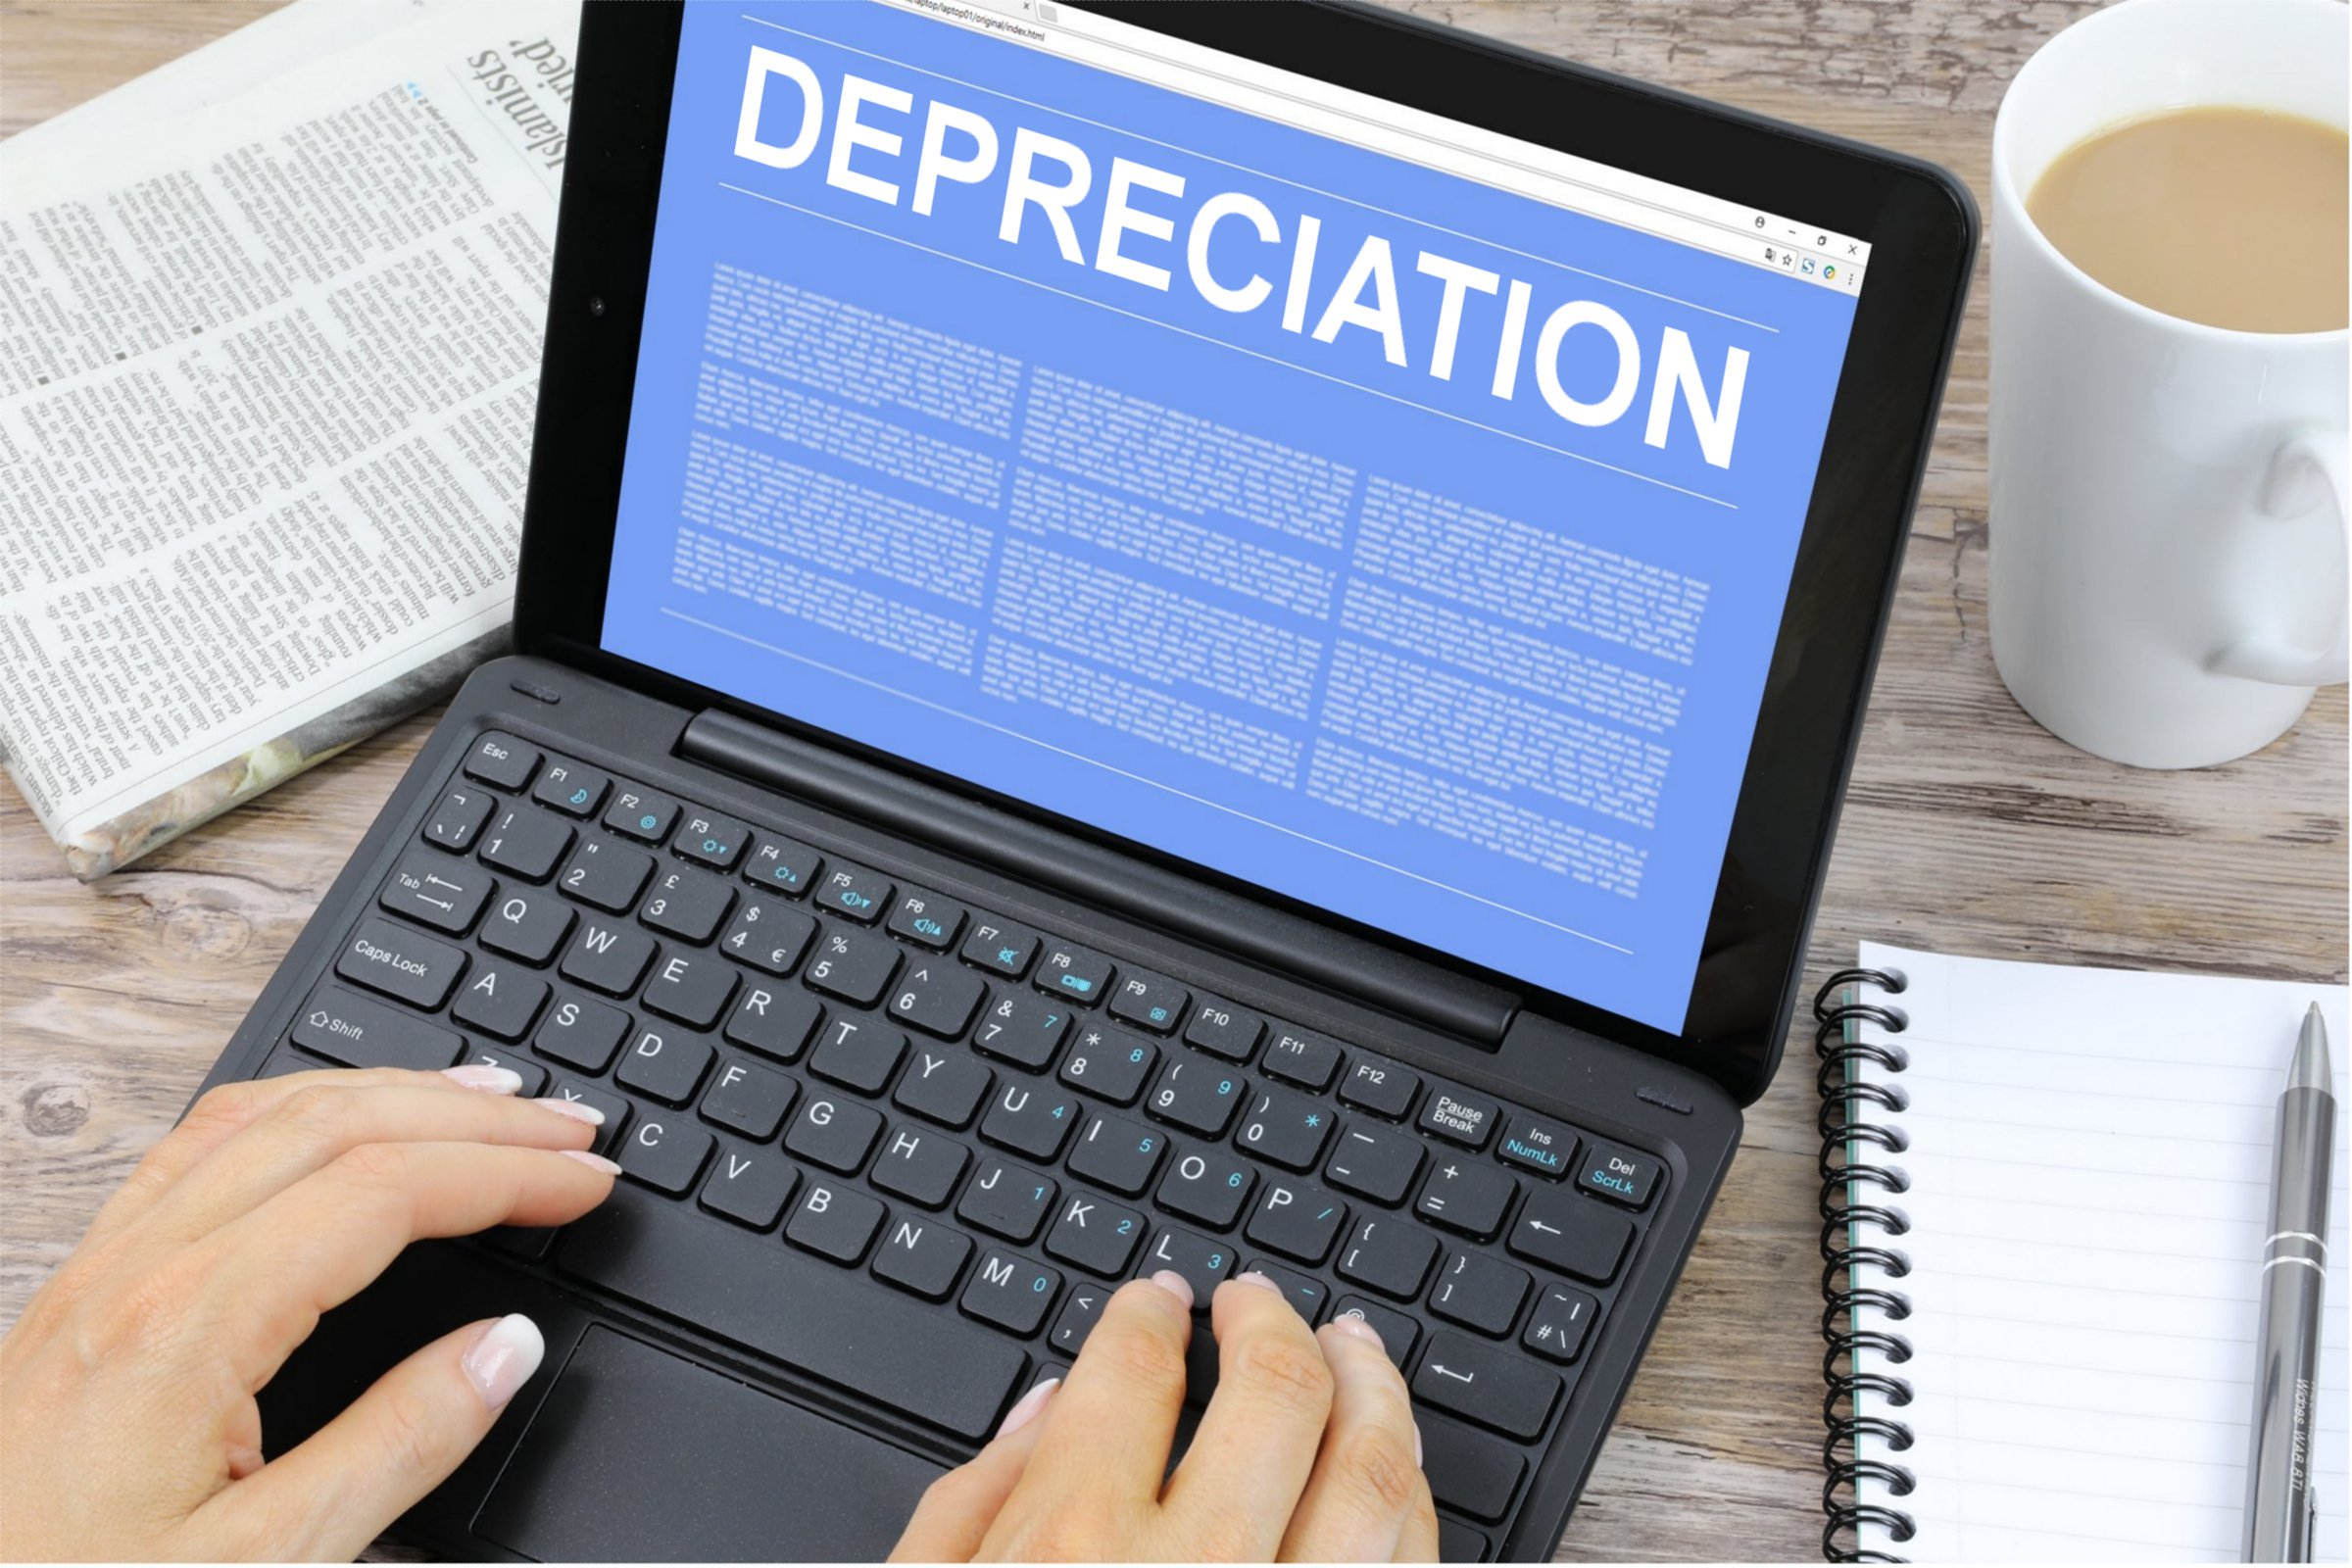 depreciation